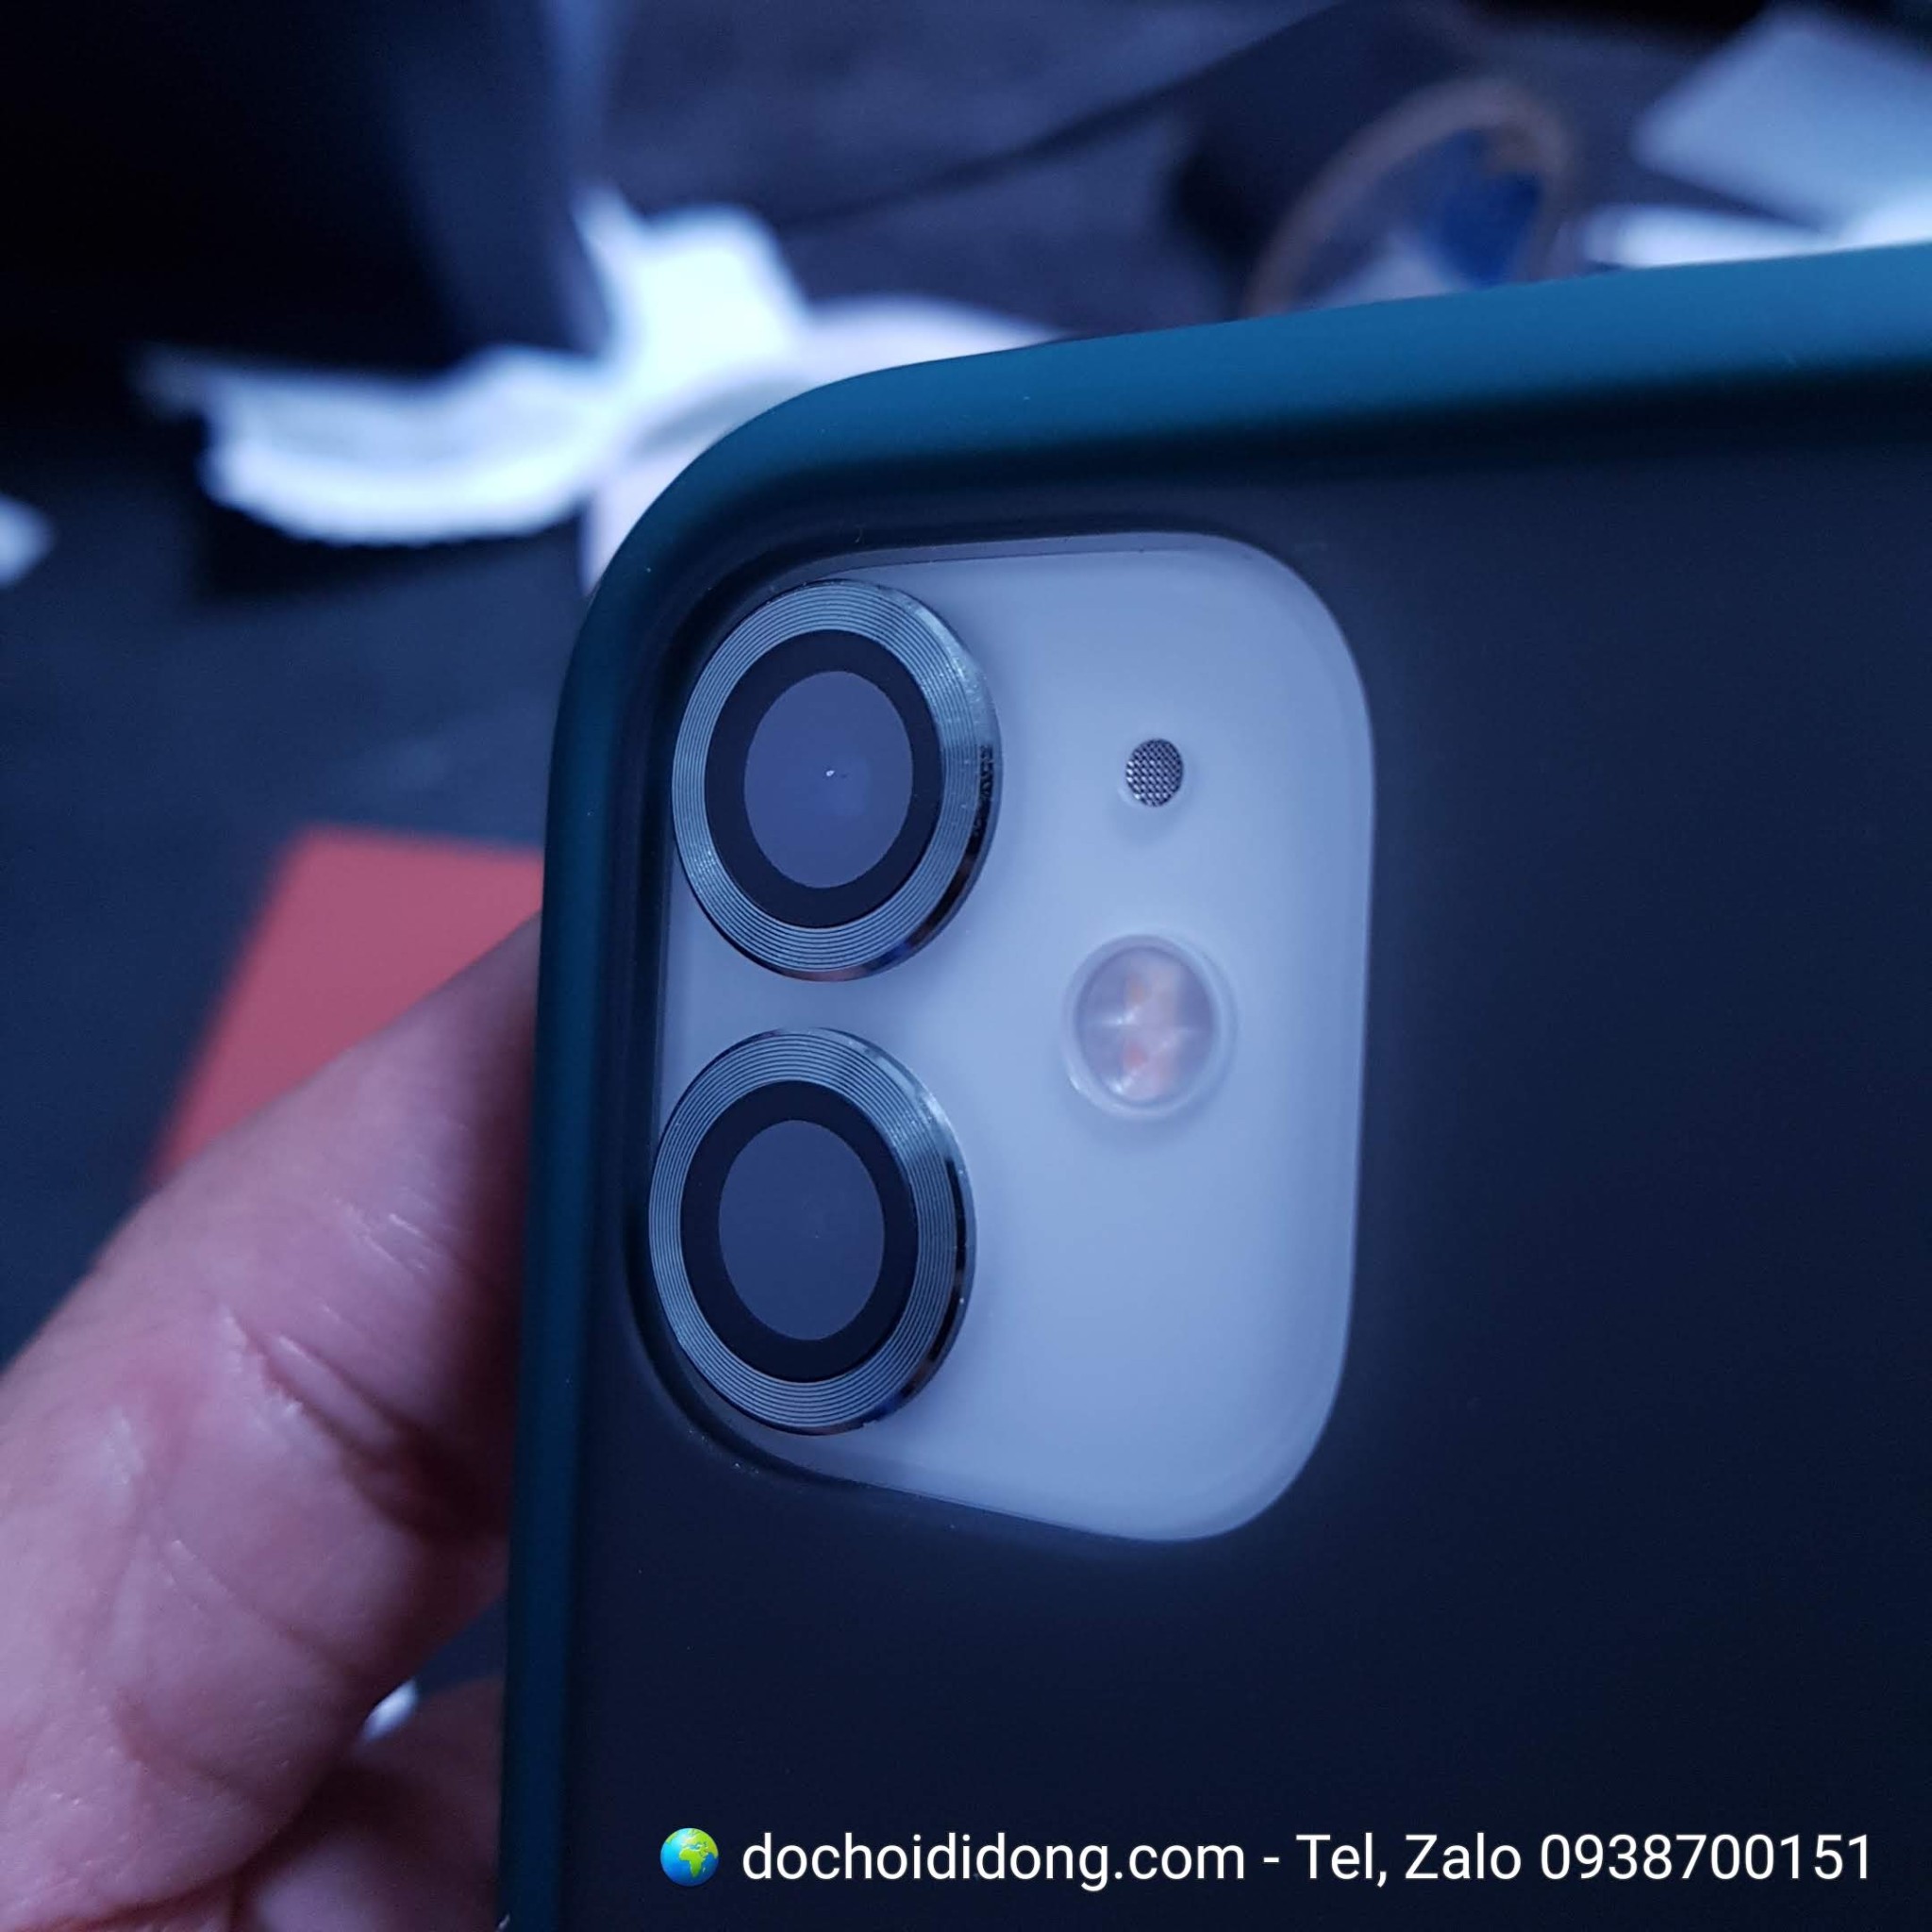 Vòng bảo vệ camera iPhone 11, Pro và Pro Max các thương hiệu